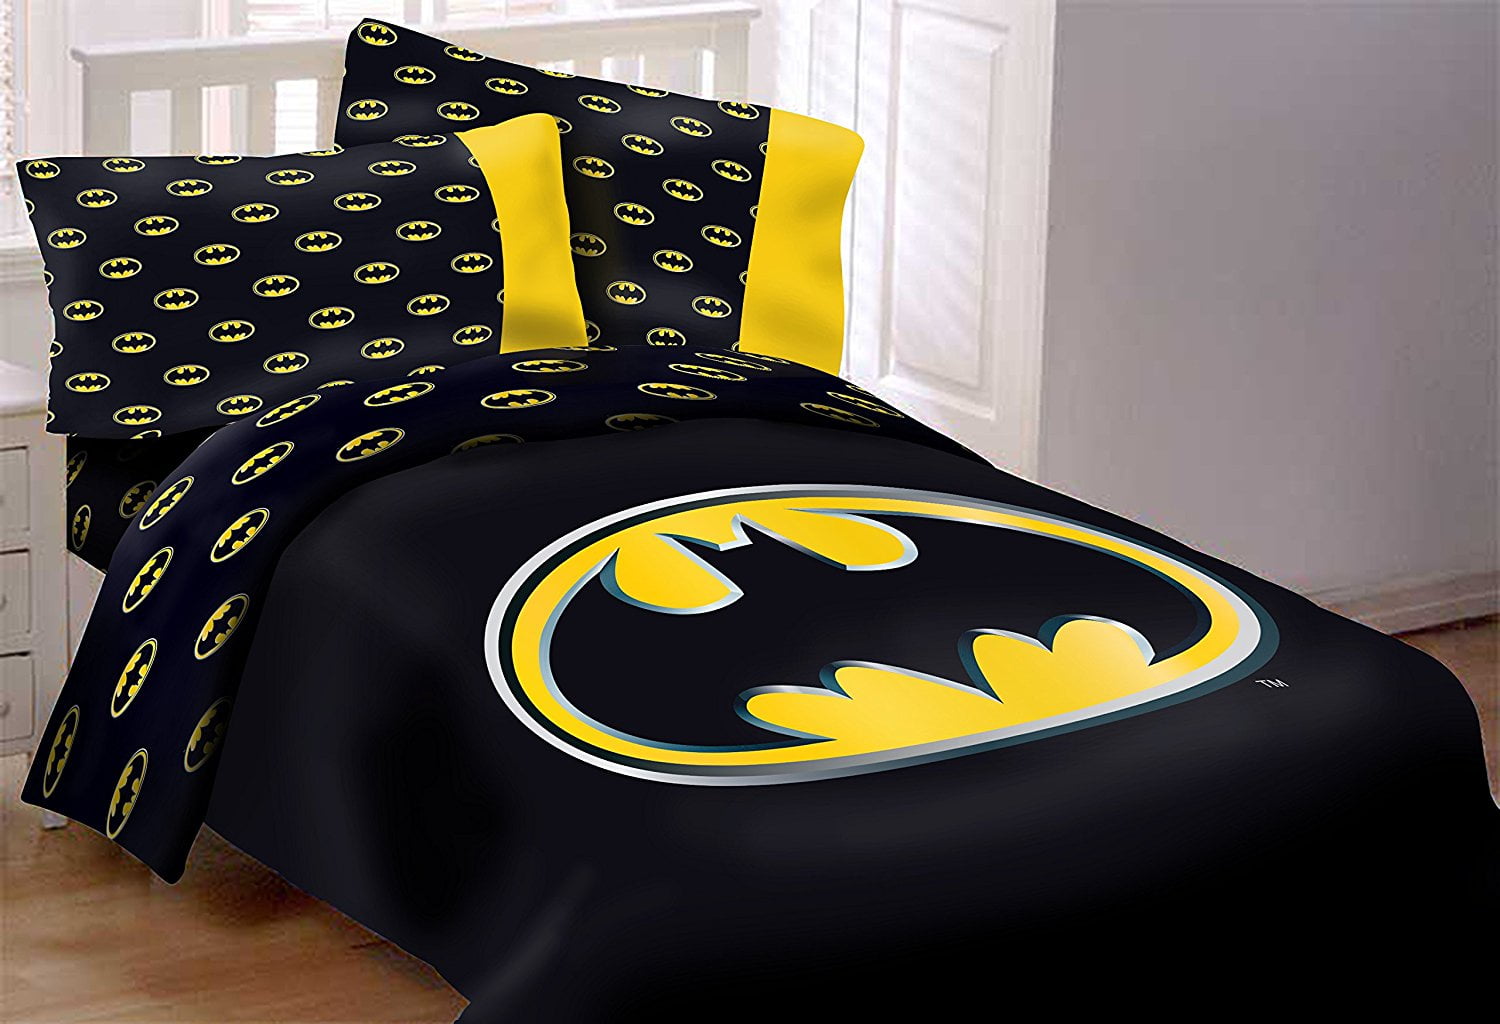 batman bedroom set for toddlers